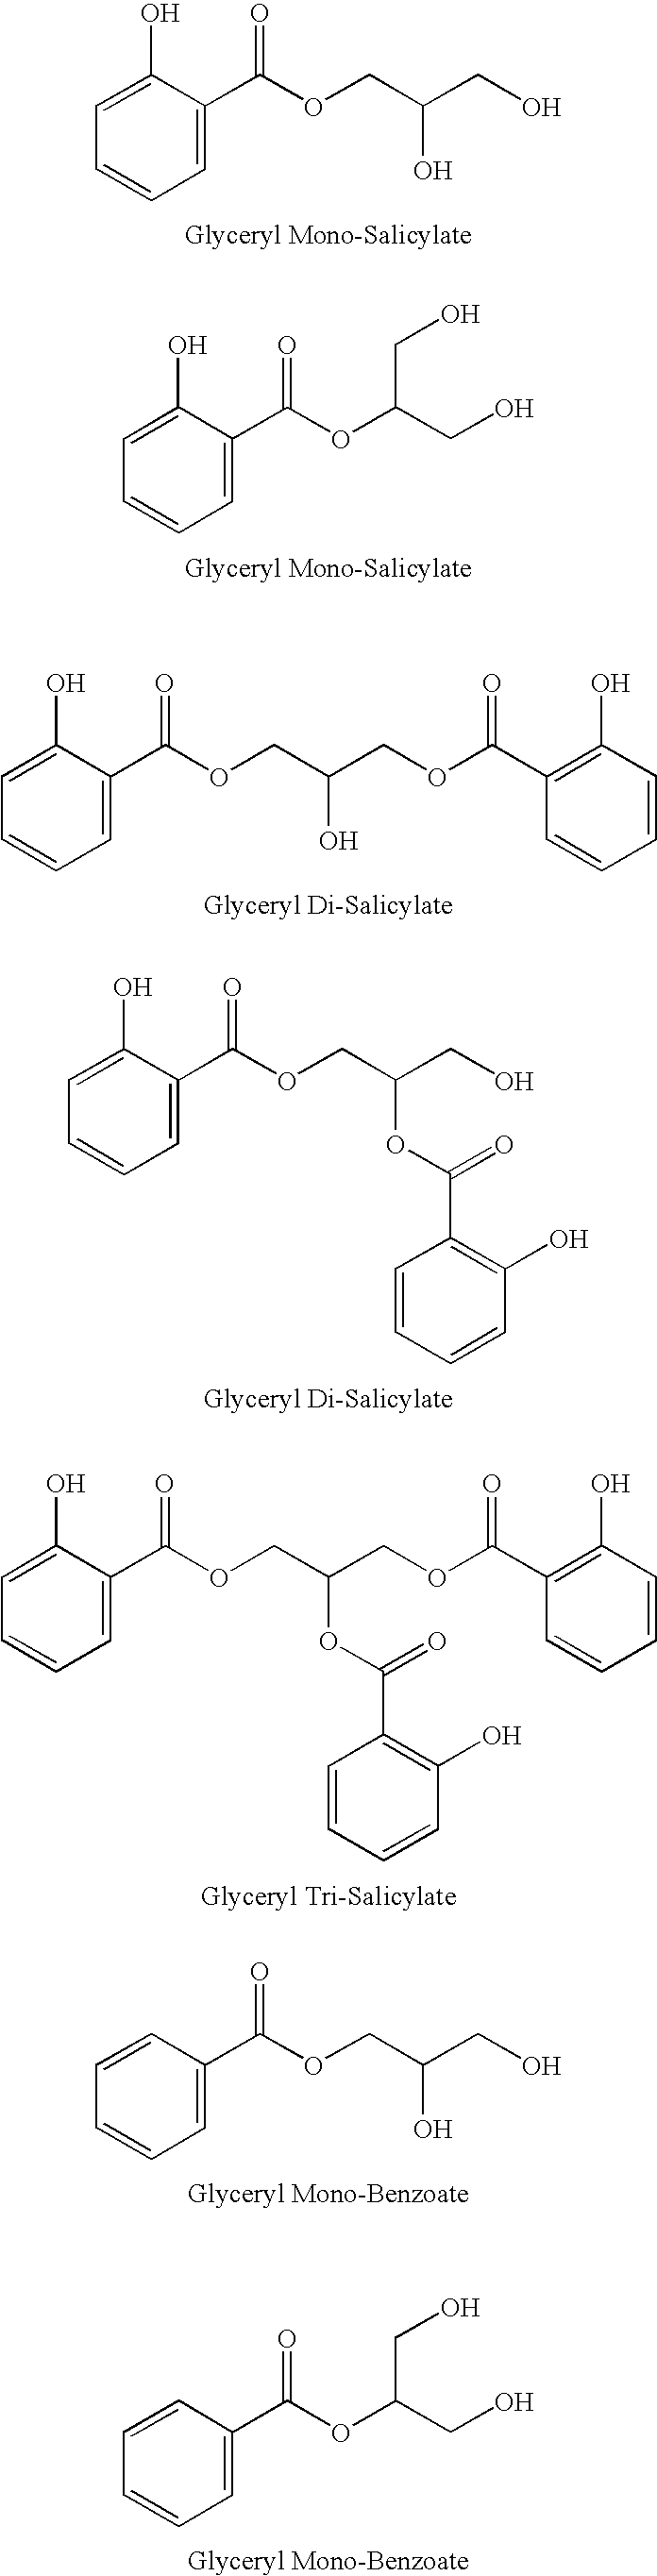 Glyceryl and glycol acid compounds